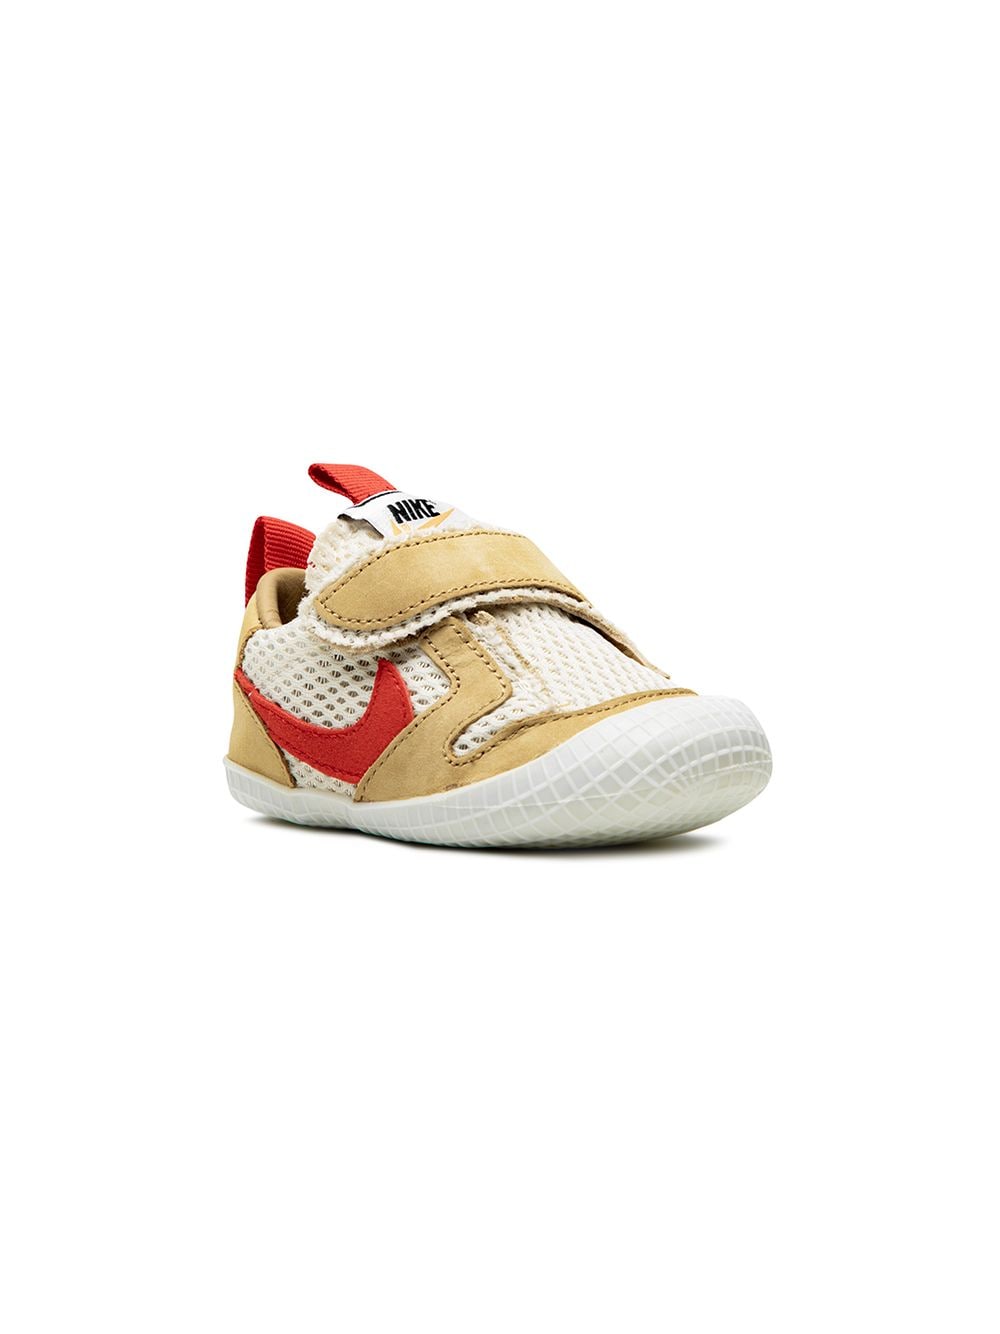 Image 1 of Nike Kids x Tom Sachs Mars Yard sneakers